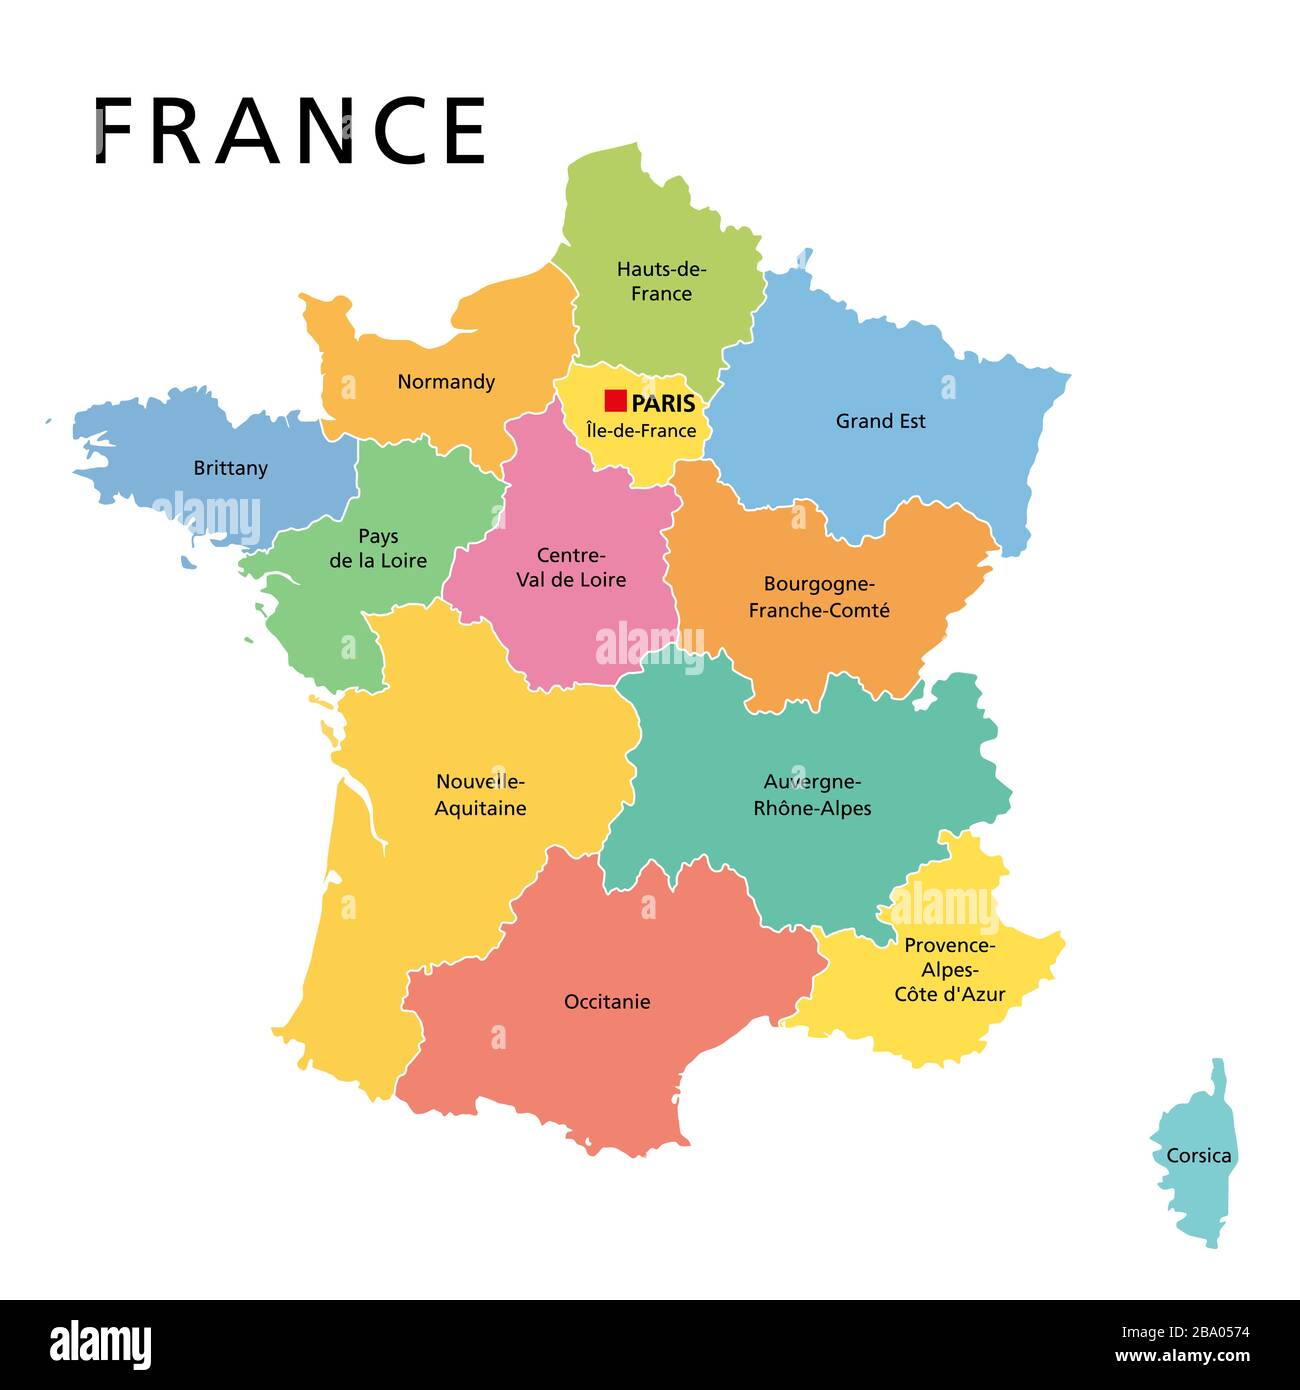 France, carte politique avec régions multicolores de la France métropolitaine. République française, capitale de Paris, régions administratives et préfectures. Banque D'Images